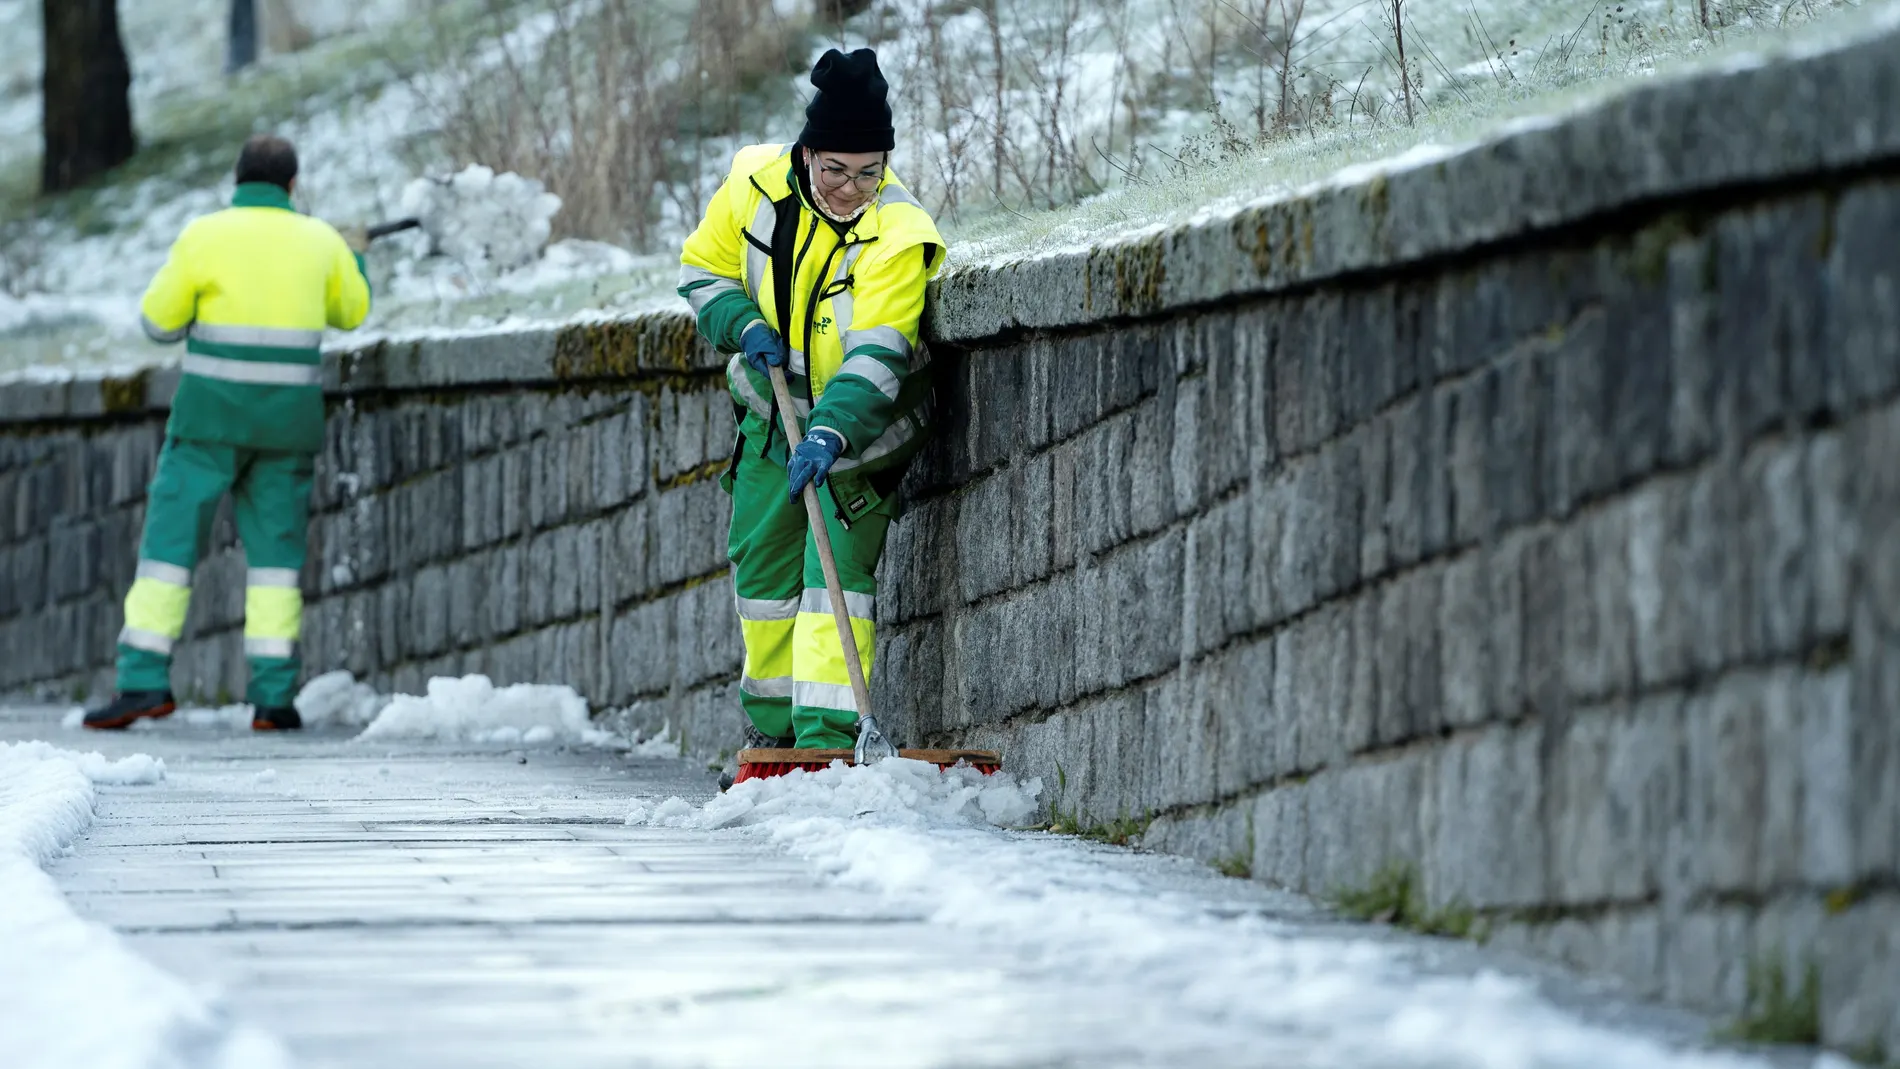 Operarios retiran la nieve y el hielo acumulado en las aceras en una calle de Ávila donde se han registrado temperaturas de 6,5 grados bajo cero durante la madrugada y primeras horas de la mañana. EFE/ Raúl Sanchidrián